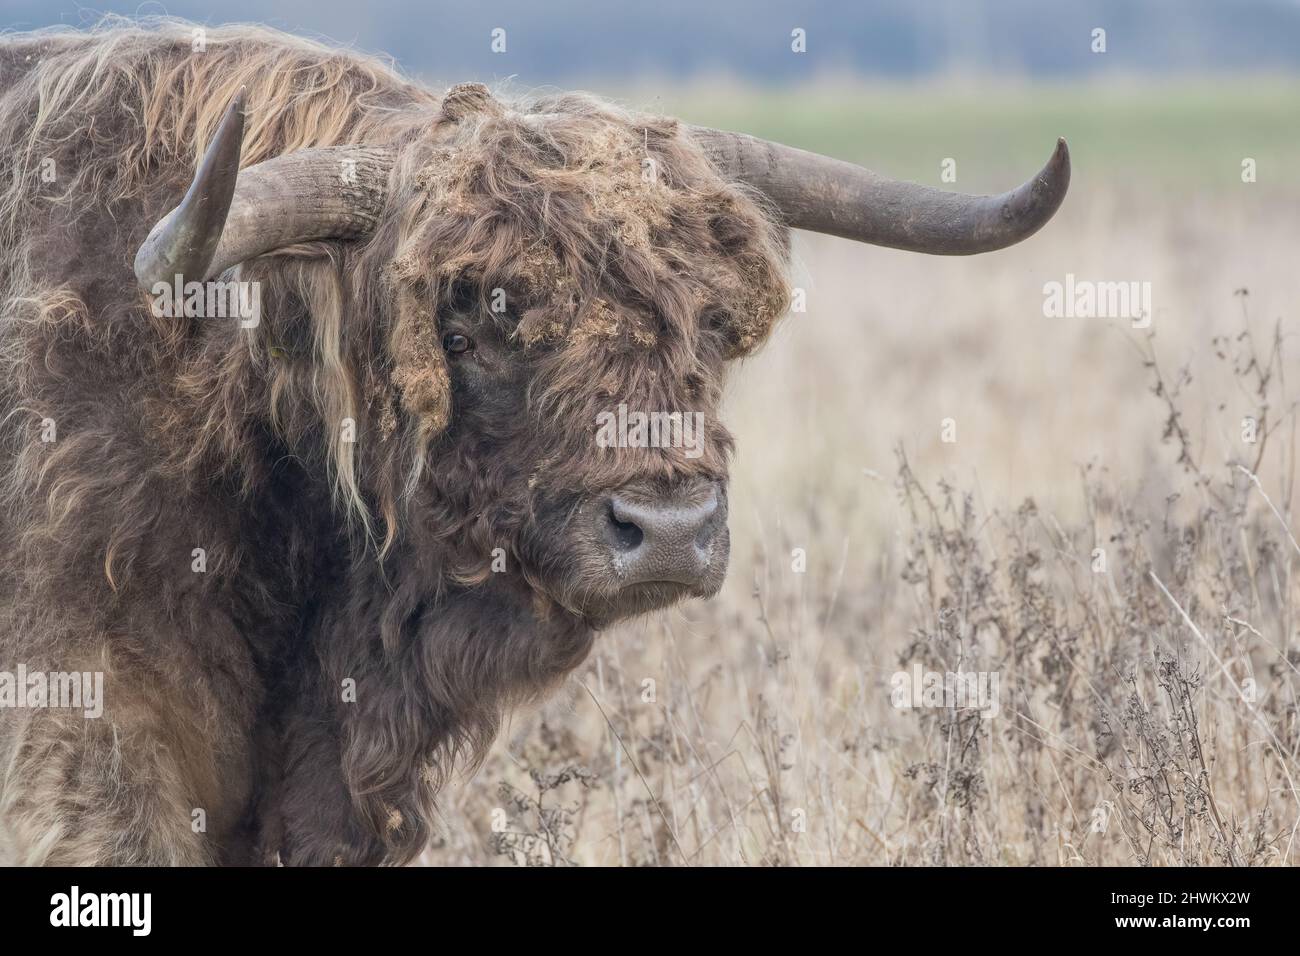 Ein großer Highland-Bulle mit riesigen Hörnern, der einen sehr schlechten Haartag hat. Sein zotteliges Fell ist mit Graten verfilzt, die während der Weide aufgenommen wurden. Canbridge Fens UK Stockfoto